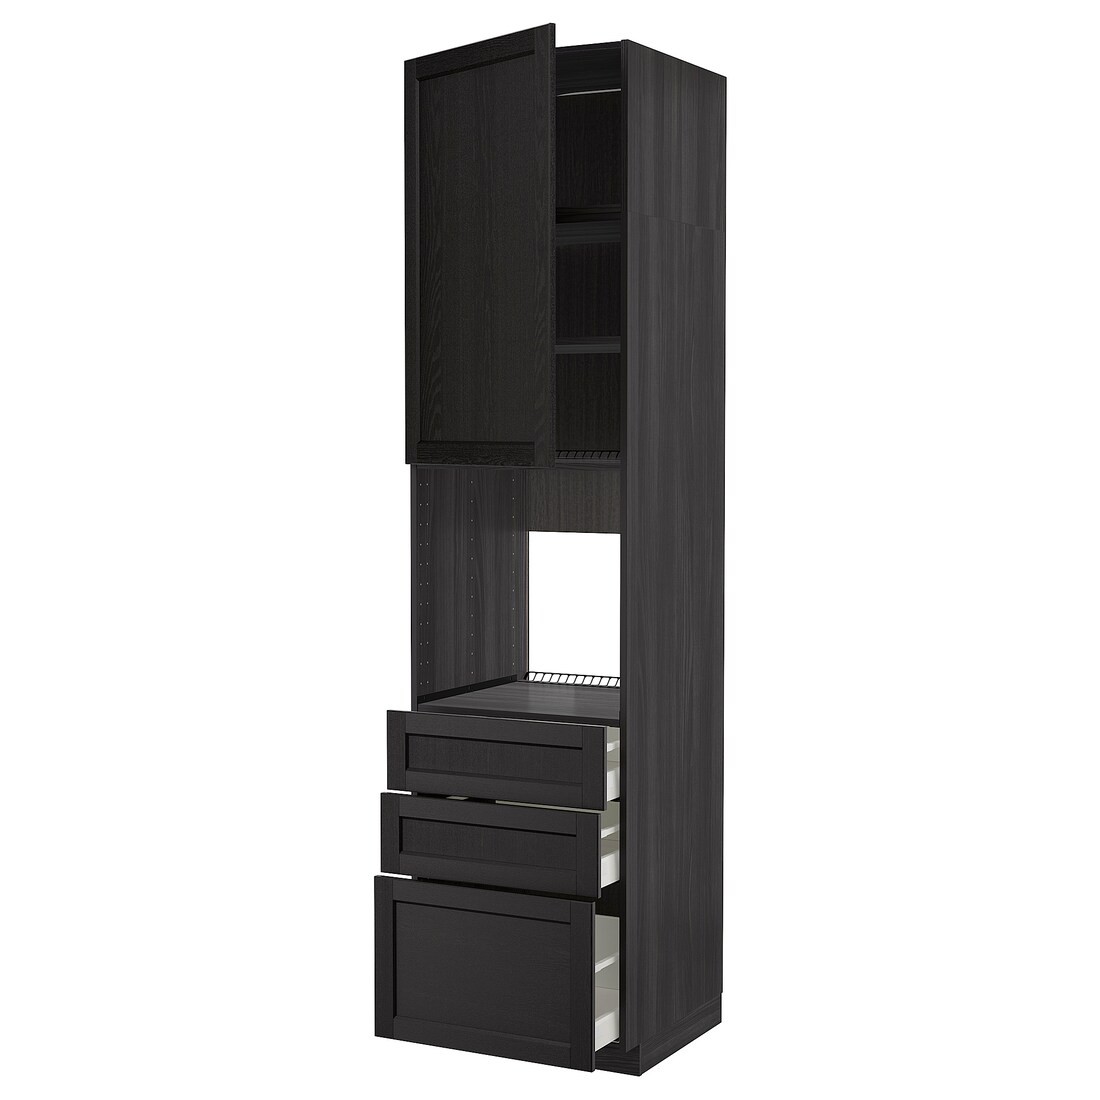 IKEA METOD МЕТОД / MAXIMERA МАКСИМЕРА Высокий шкаф для духовки, черный / Lerhyttan черная морилка, 60x60x240 см 59468703 | 594.687.03